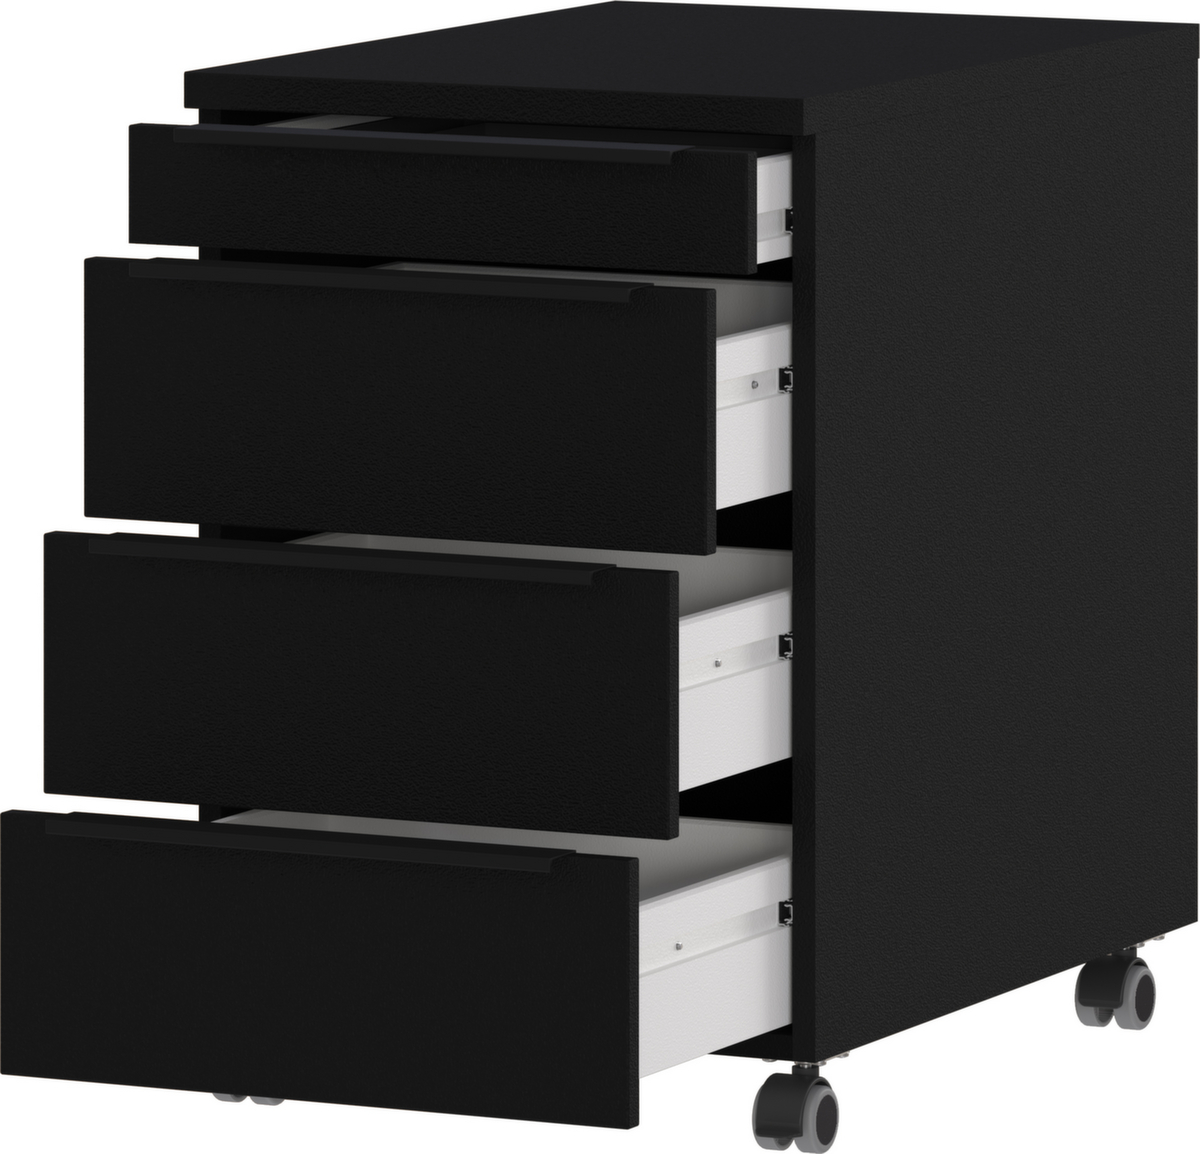 Rollcontainer GW-MAILAND 4377, 3 Schublade(n), schwarz/schwarz Standard 3 ZOOM